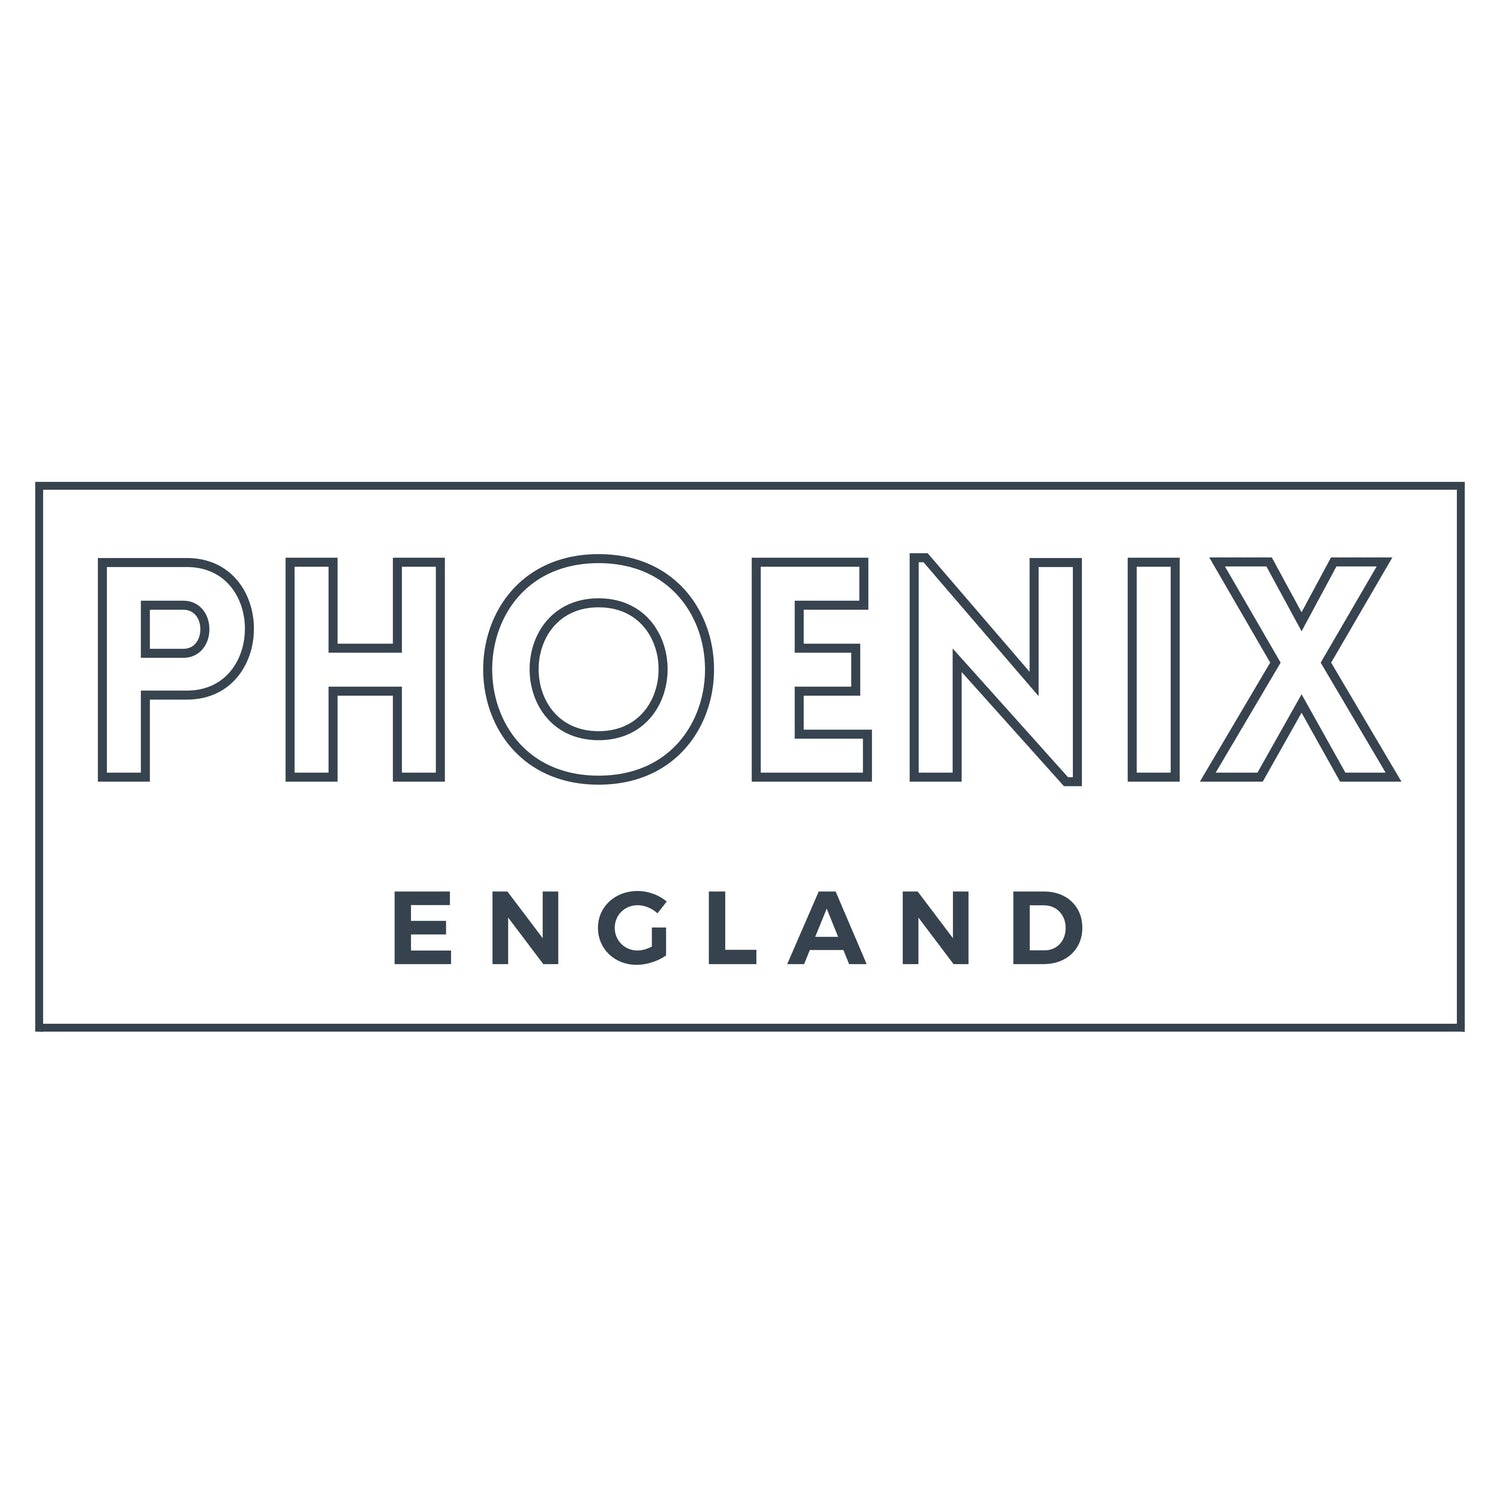 phoenix england uk